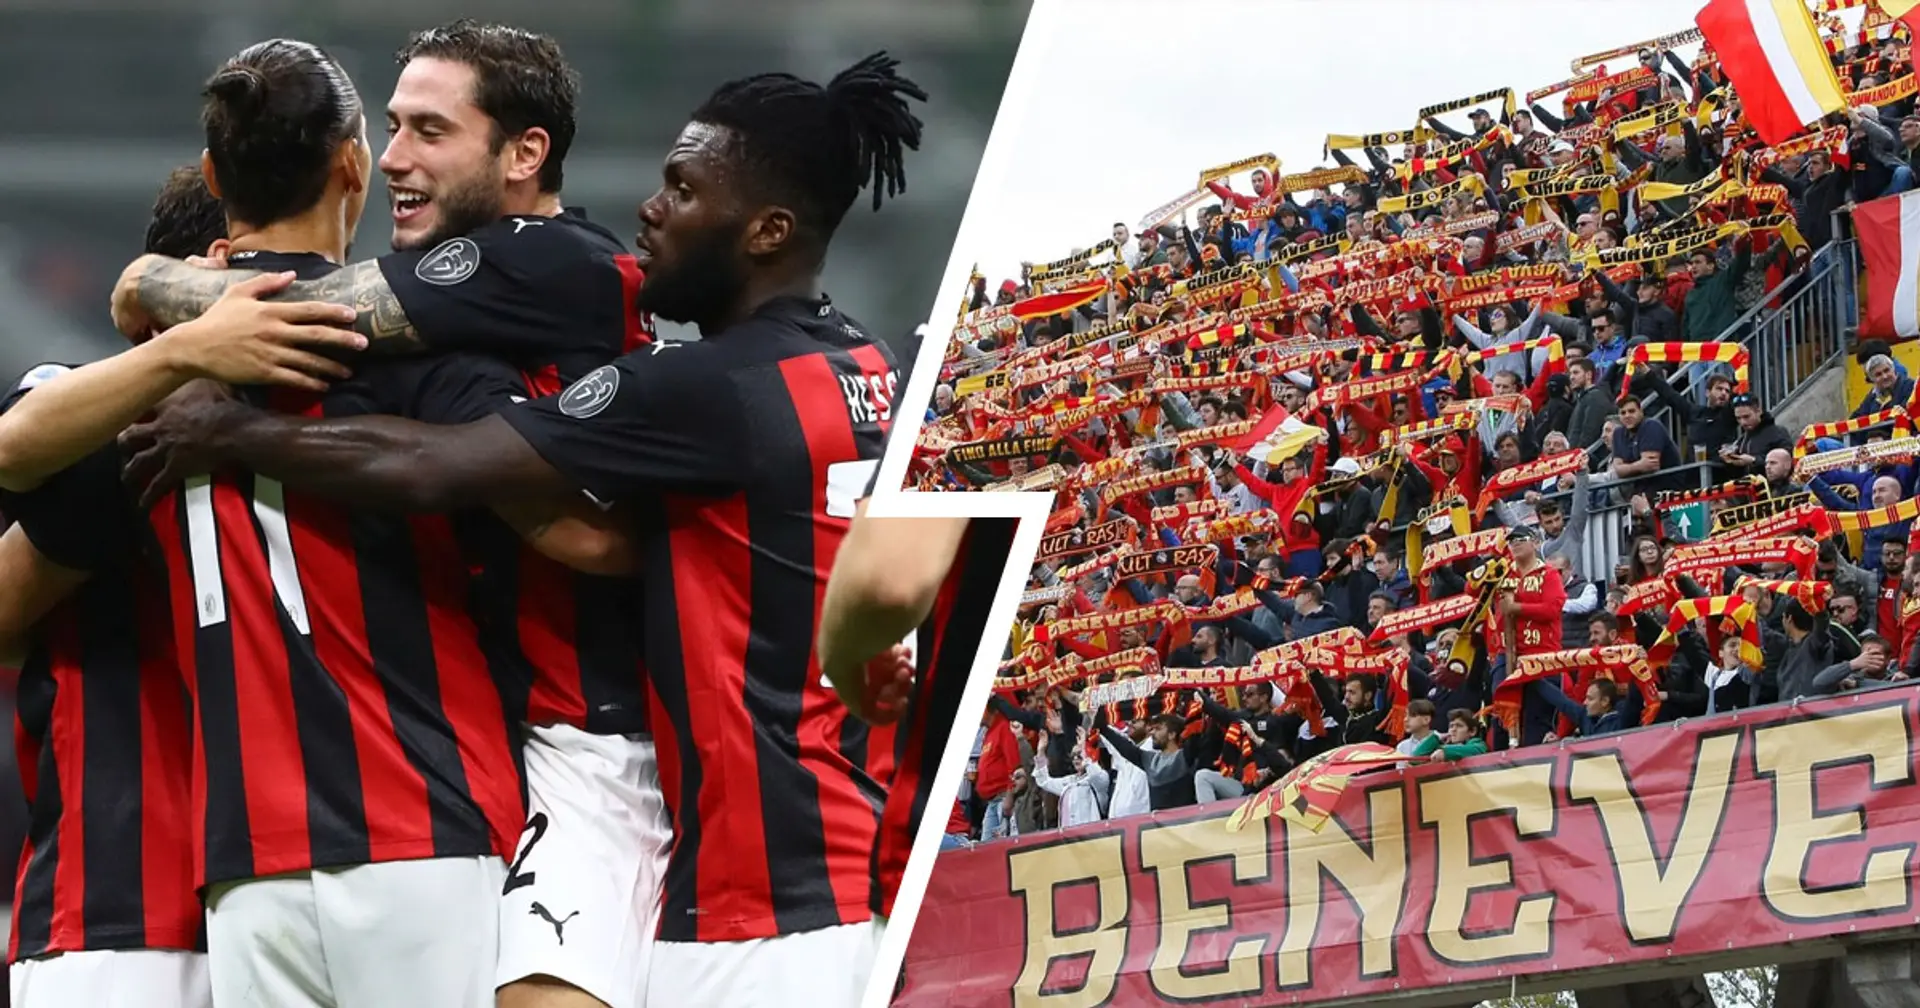 Da "Vinceremo a mani basse" a "Ne pigliamm' sei": le aspettative dei tifosi rivali per il match contro il Milan